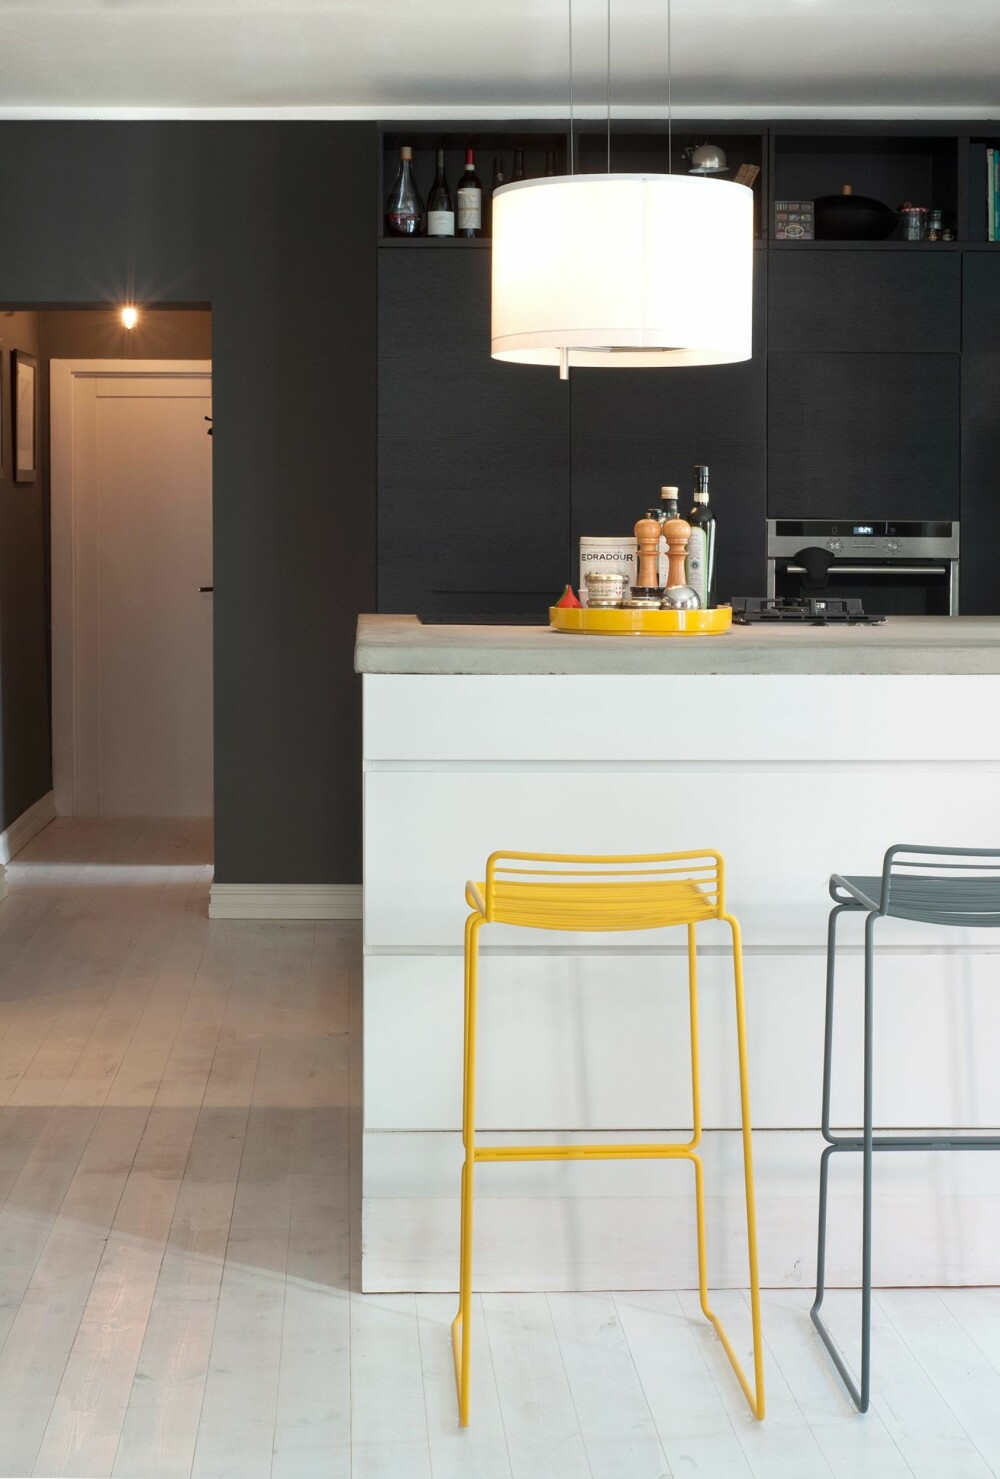 SVART, HVITT OG GULT: Kjøkkenveggen fra er kullsvart, mens kjøkkenøya er kritthvit. Dermed får den gule barkrakkene fra Hay en utpreget signaleffekt. Benkeplaten i slipt mur er 250 cm bred og 140 cm dyp. Over koketoppen henger en kombinert lampe/avtrekkshette fra Ikea.
Innredningen er fra Kvik.